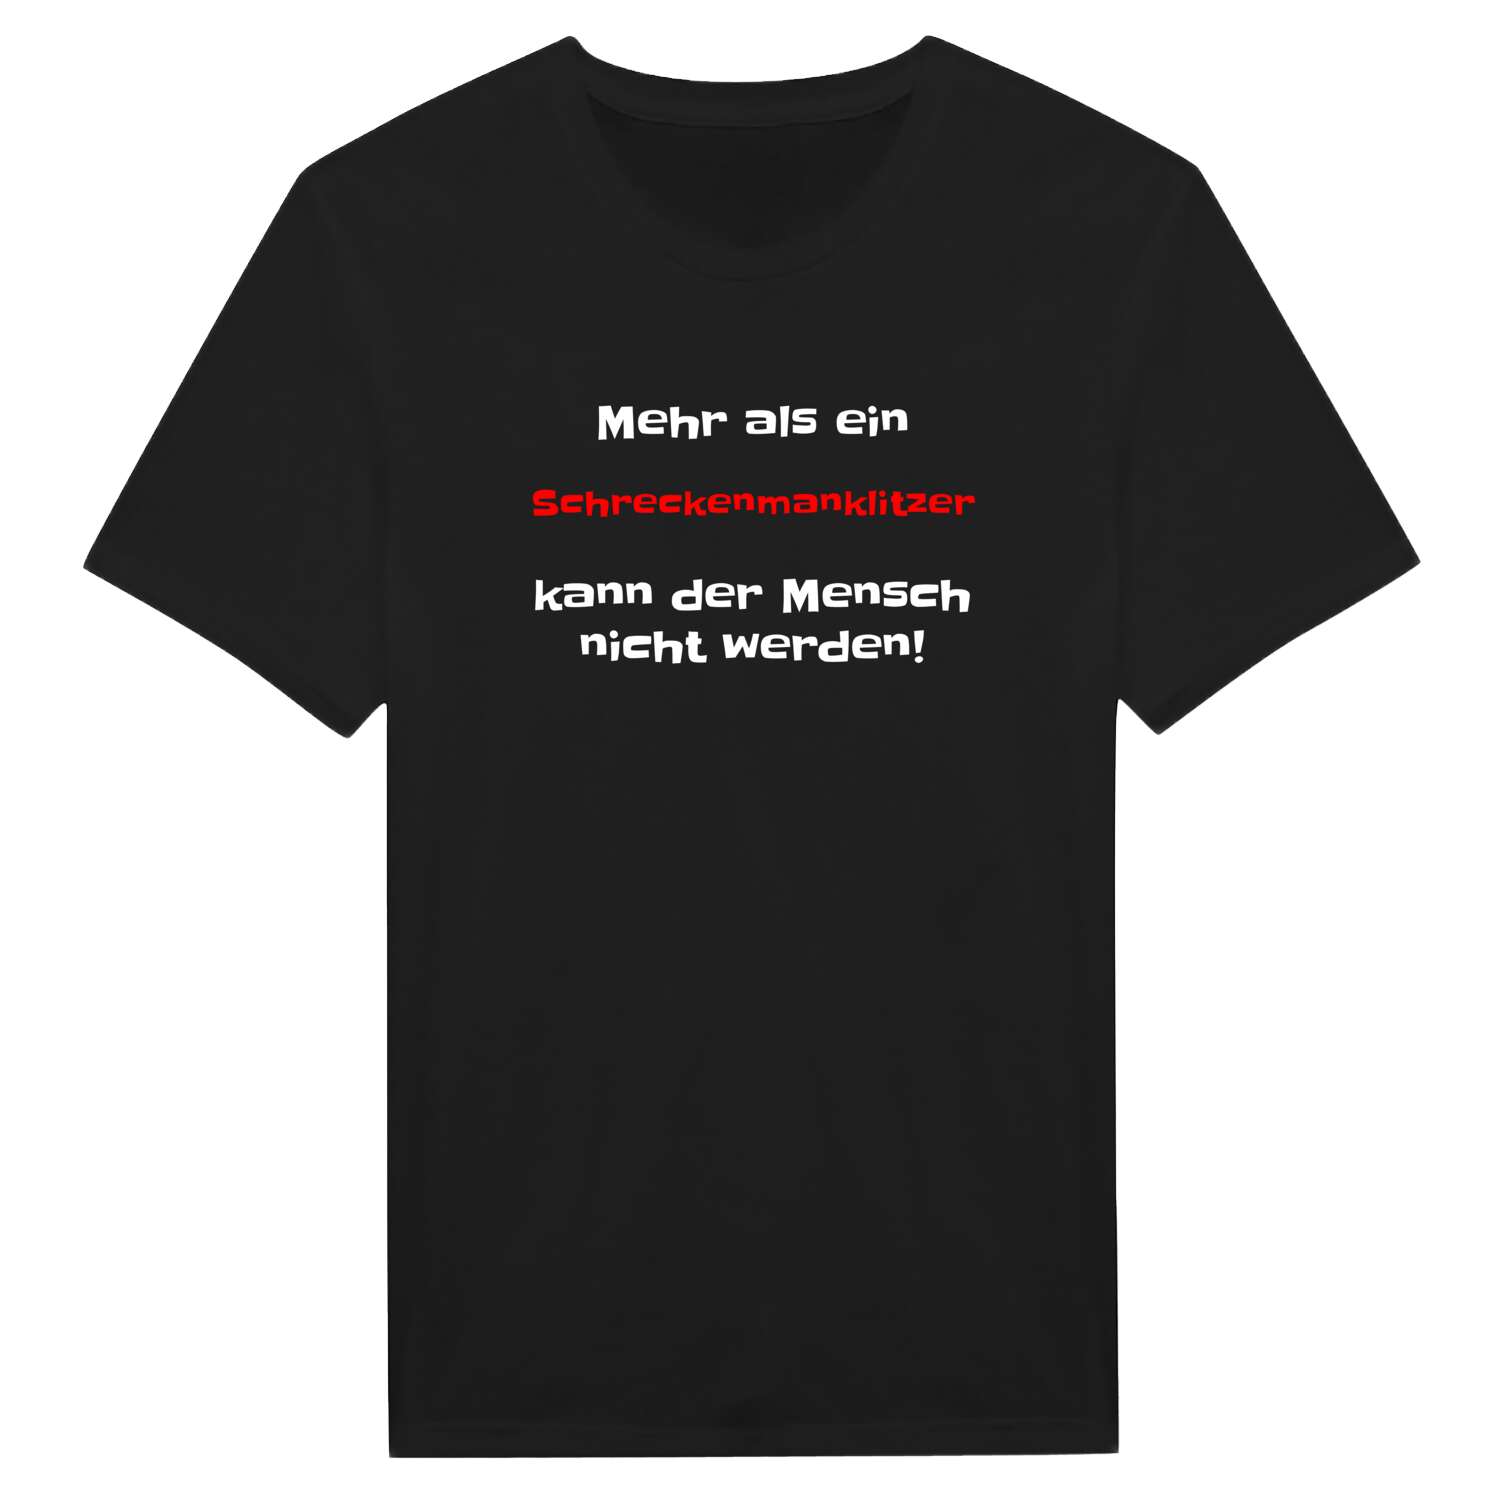 Schreckenmanklitz T-Shirt »Mehr als ein«